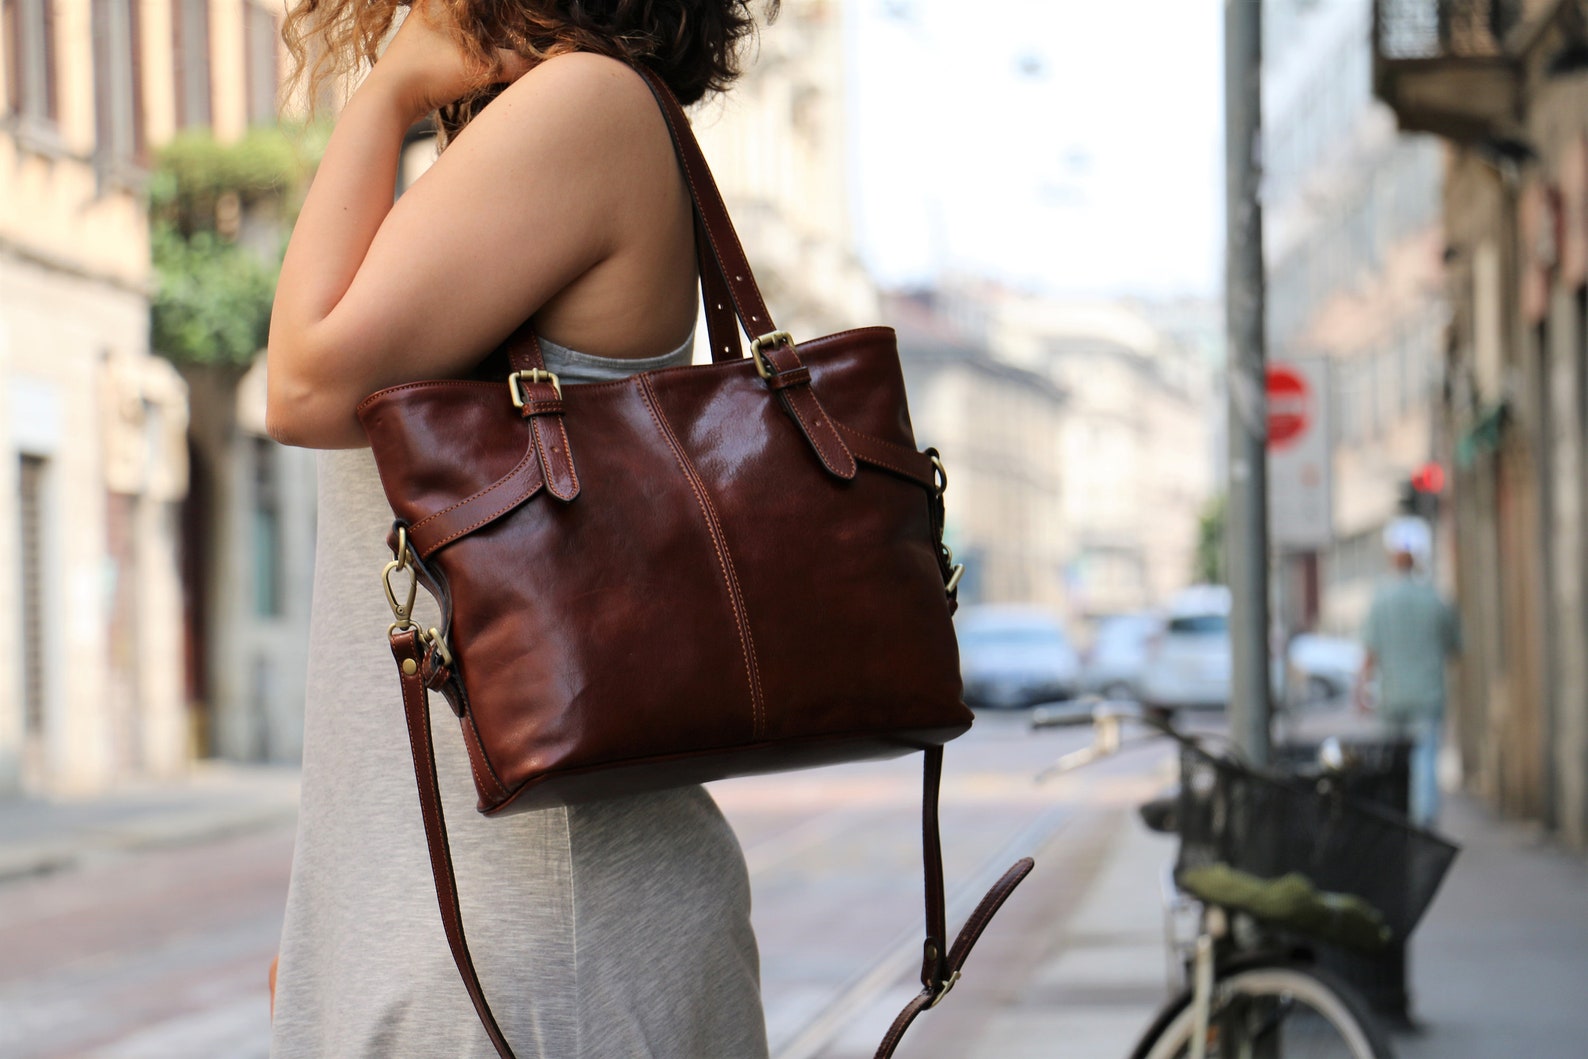 Leather bag handmade leather bag handbag woman leather bag | Etsy